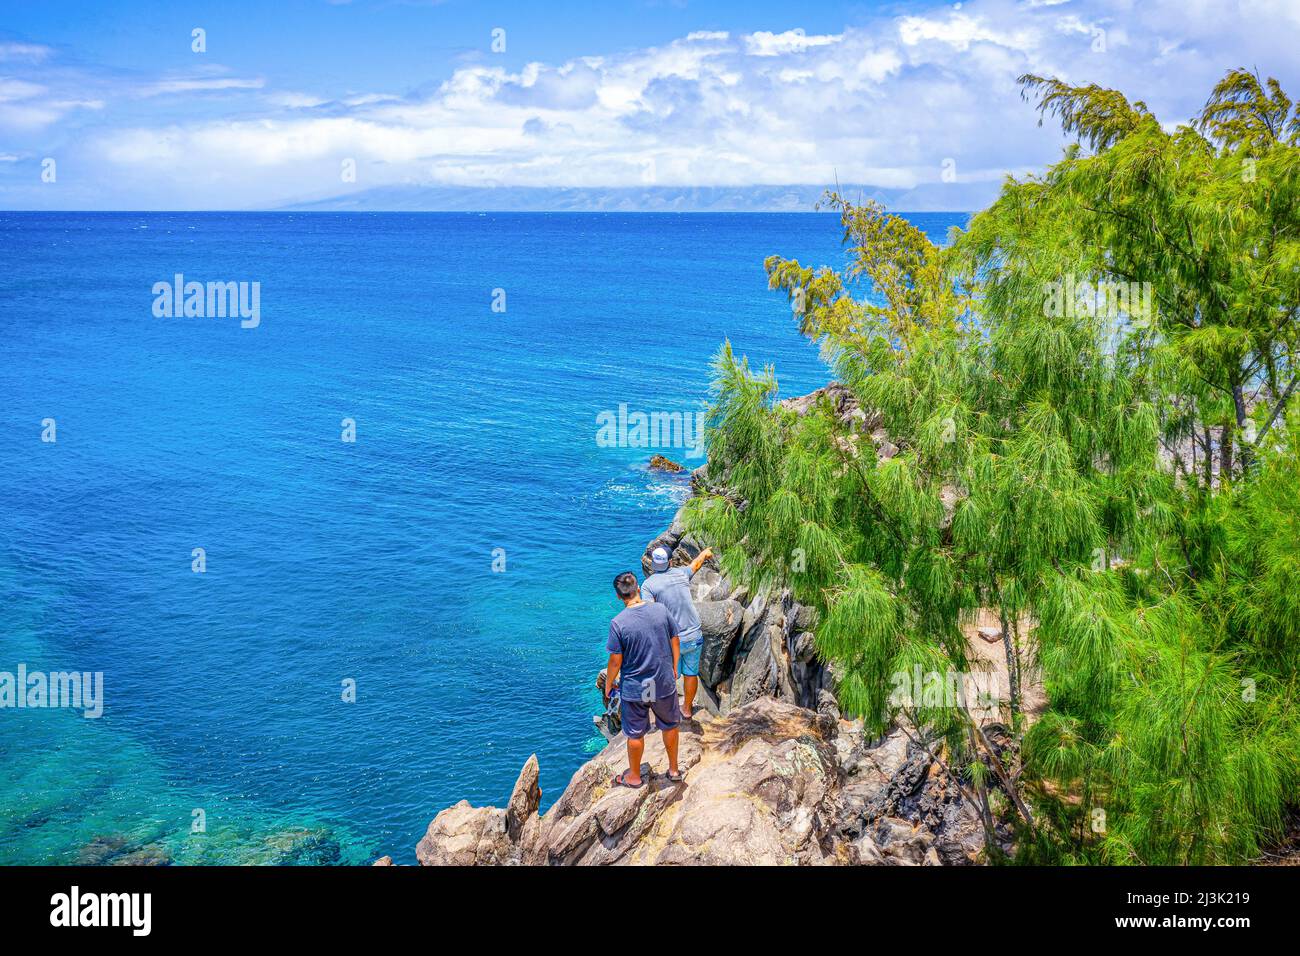 Zwei männliche Touristen stehen auf einer zerklüfteten Klippe mit Blick auf den riesigen blauen Ozean und eine Insel in der Ferne Stockfoto